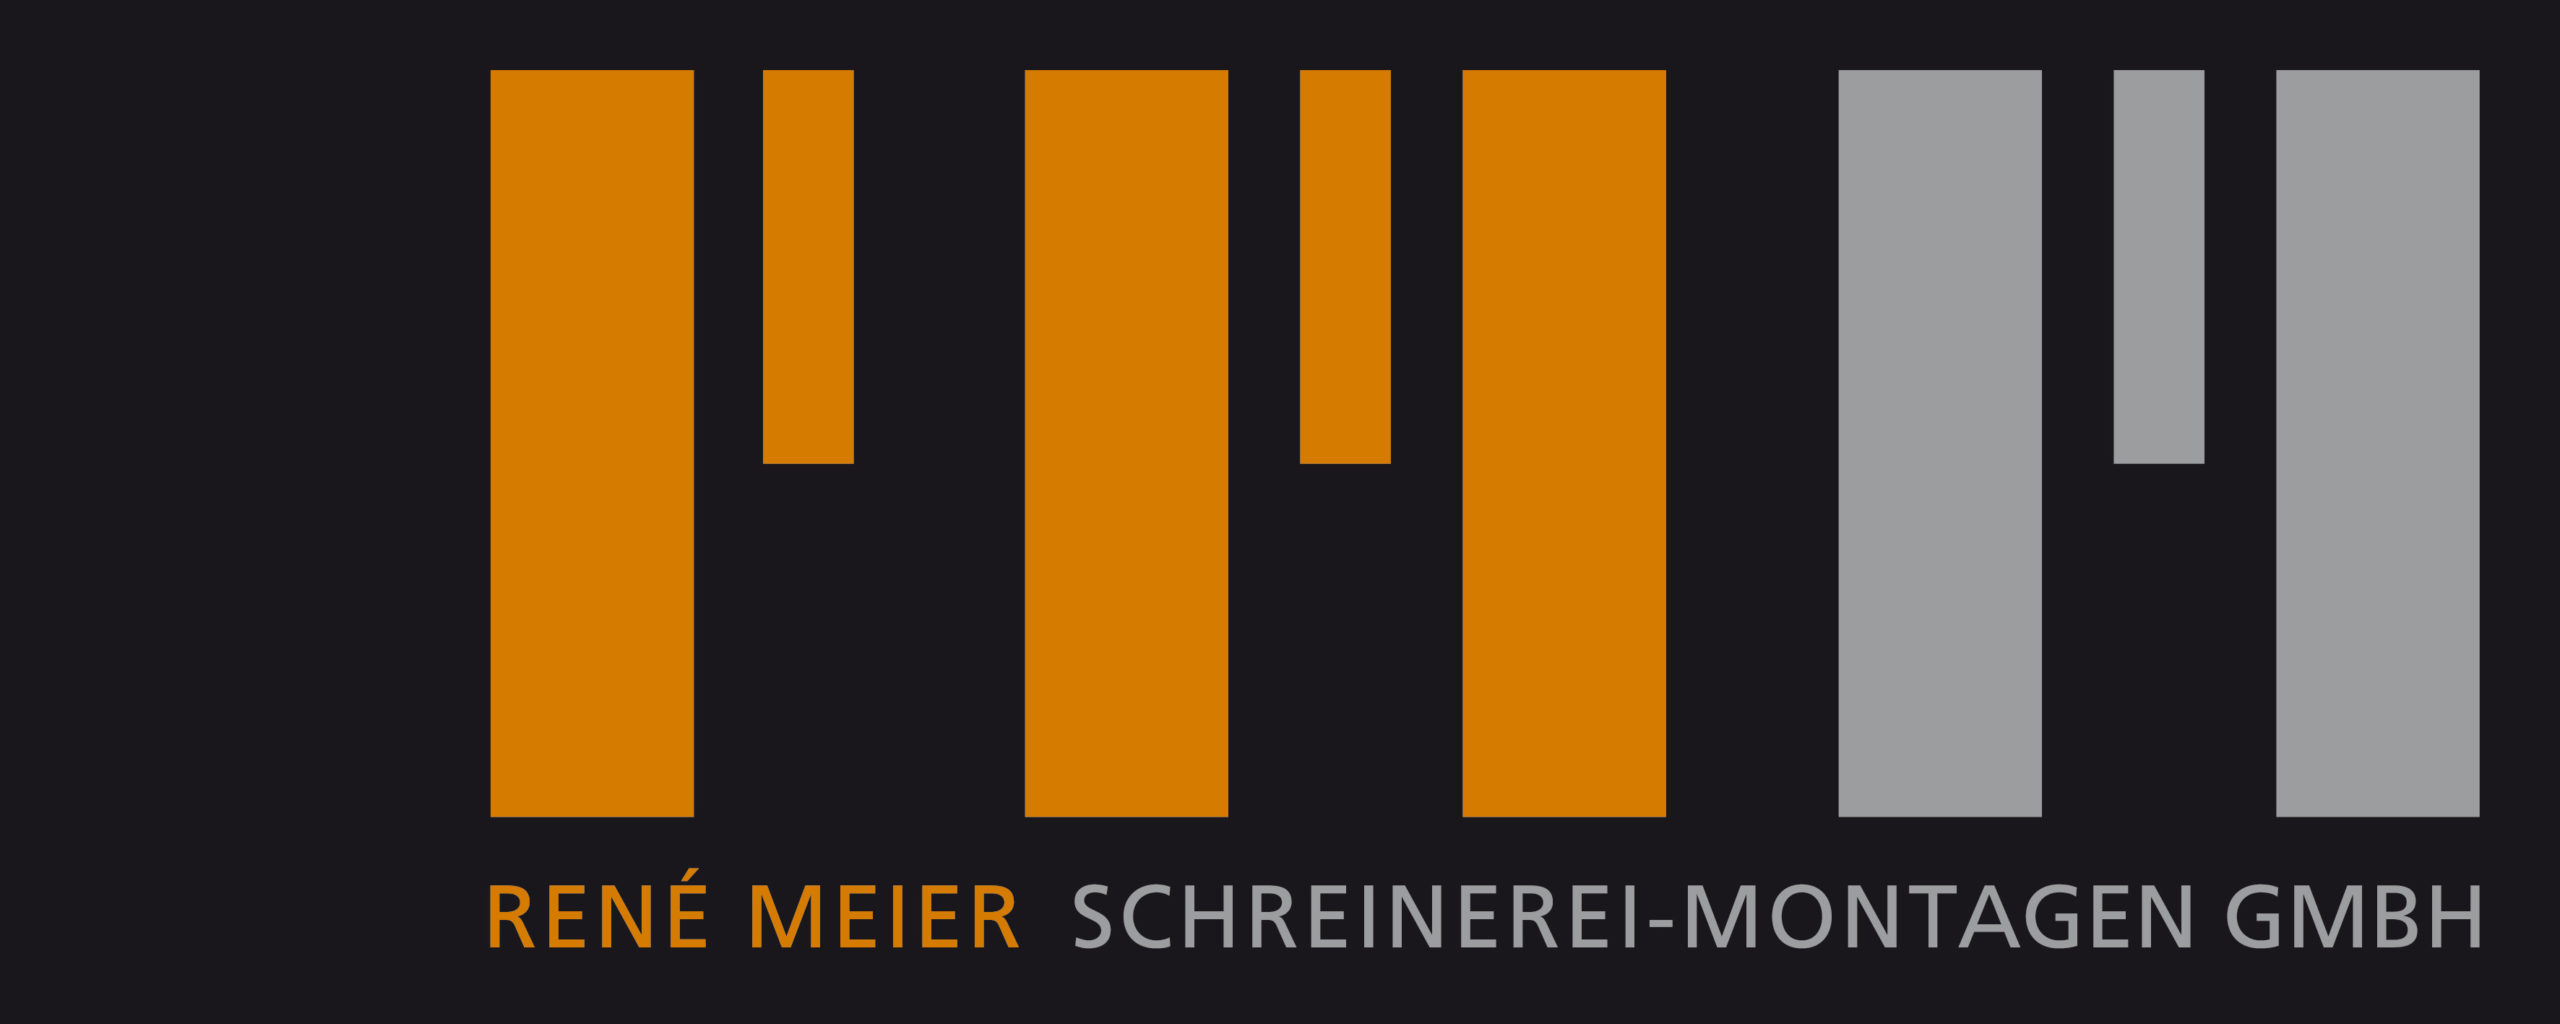 René Meier Schreinerei-Montagen GmbH